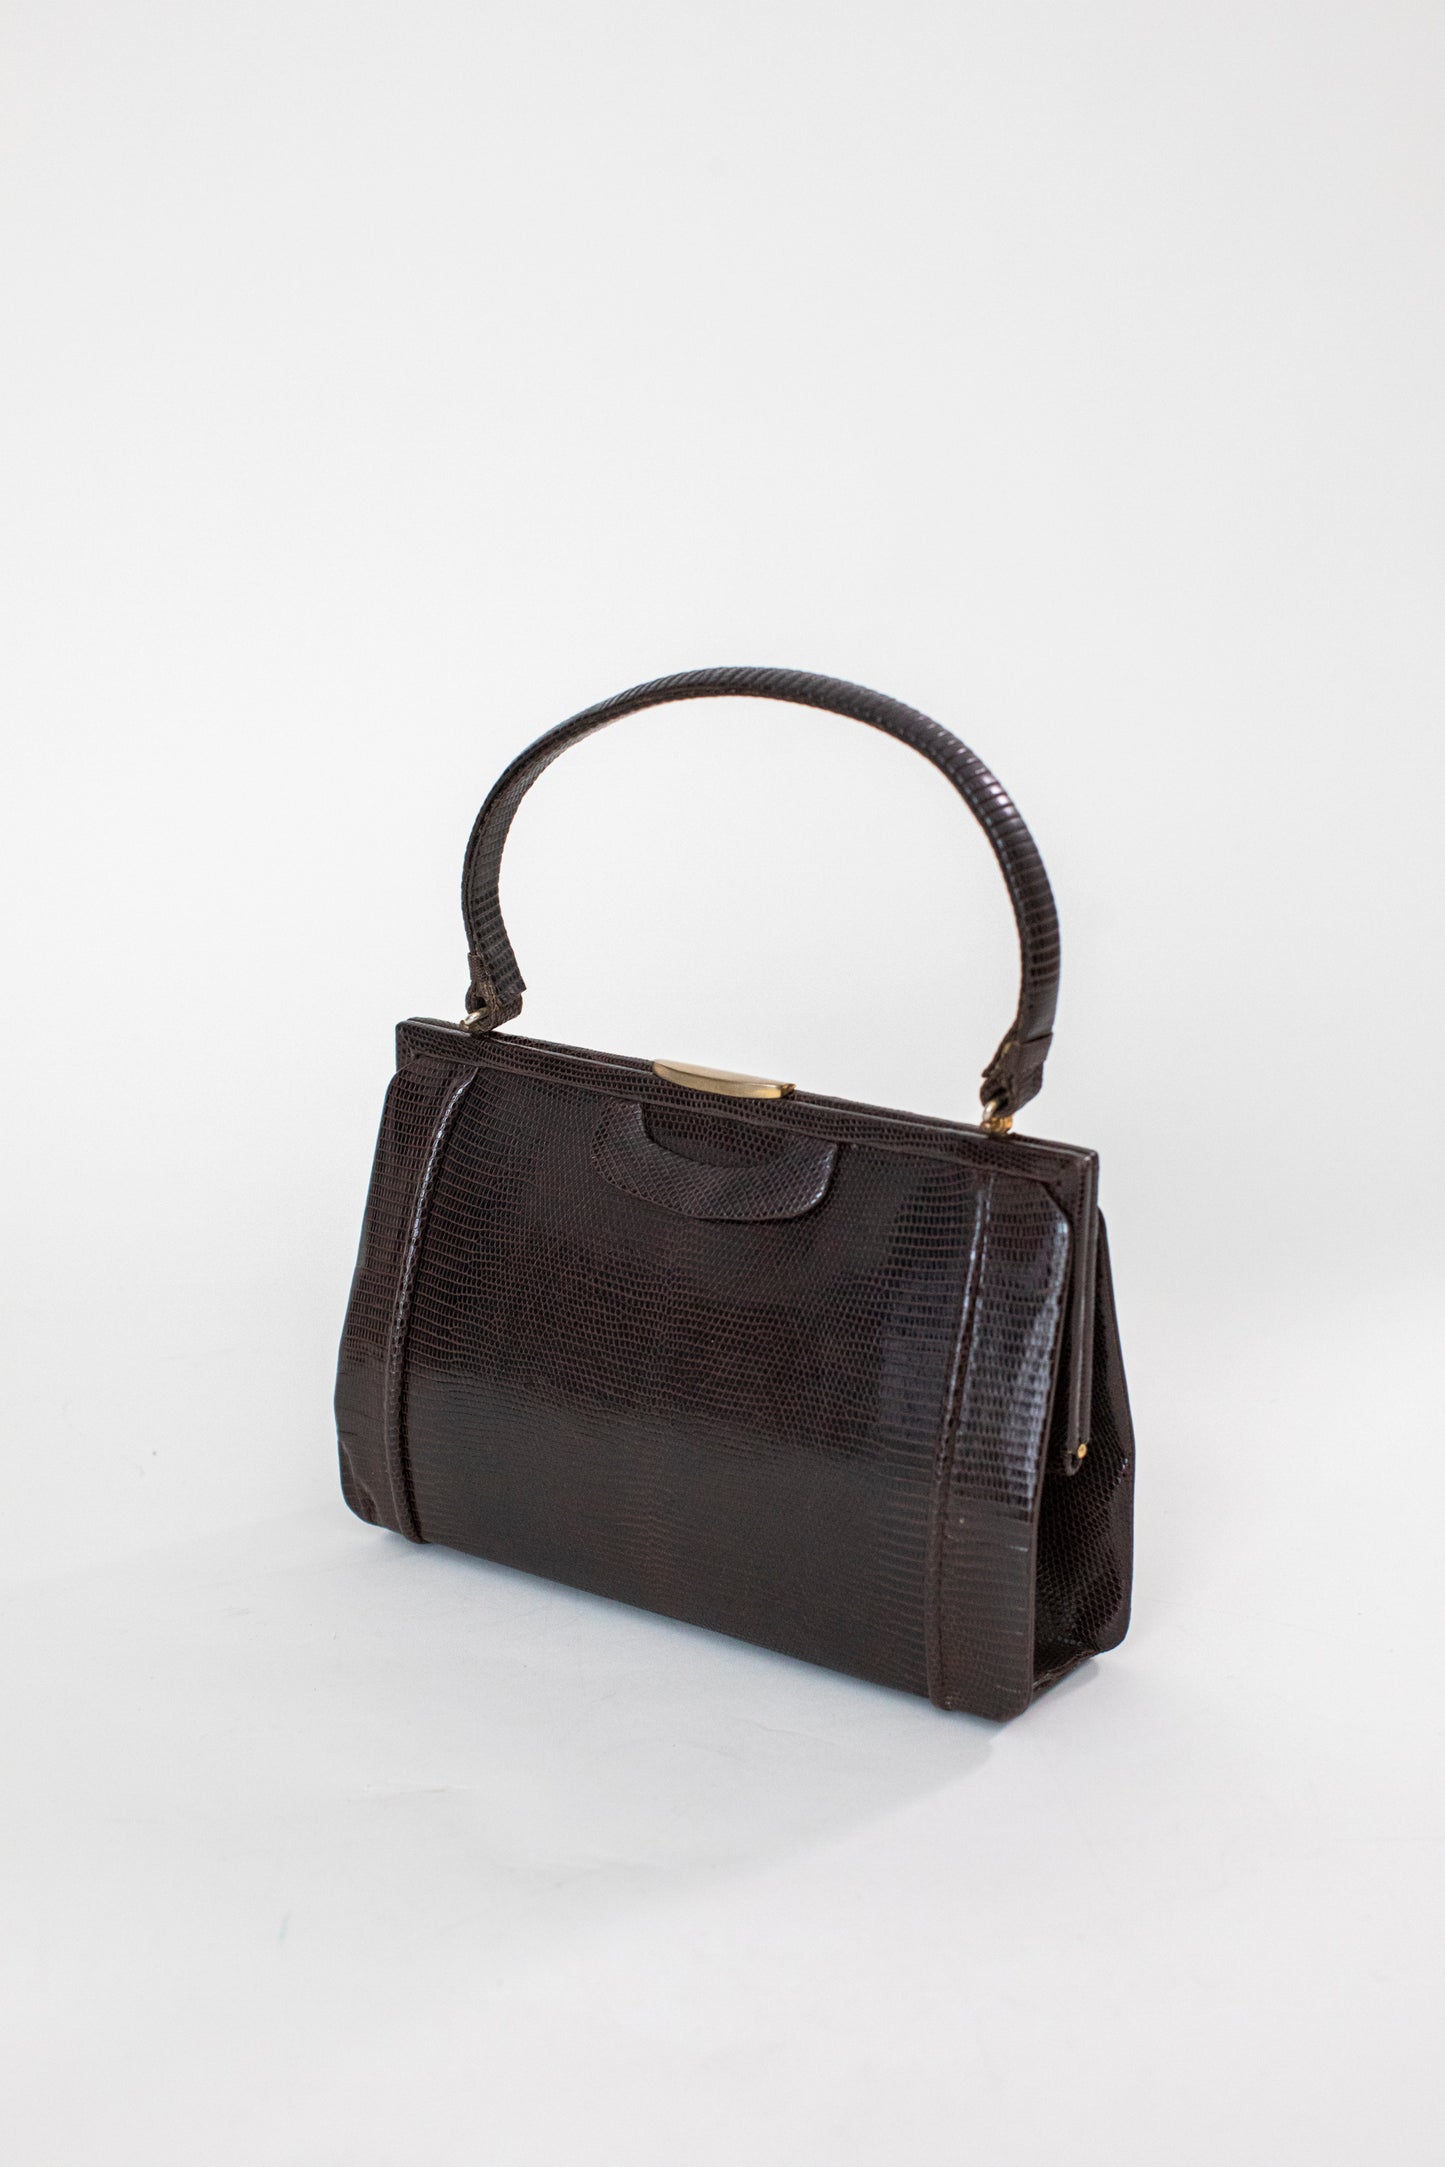 1960 Vintage Brown Snake Leather Handbag